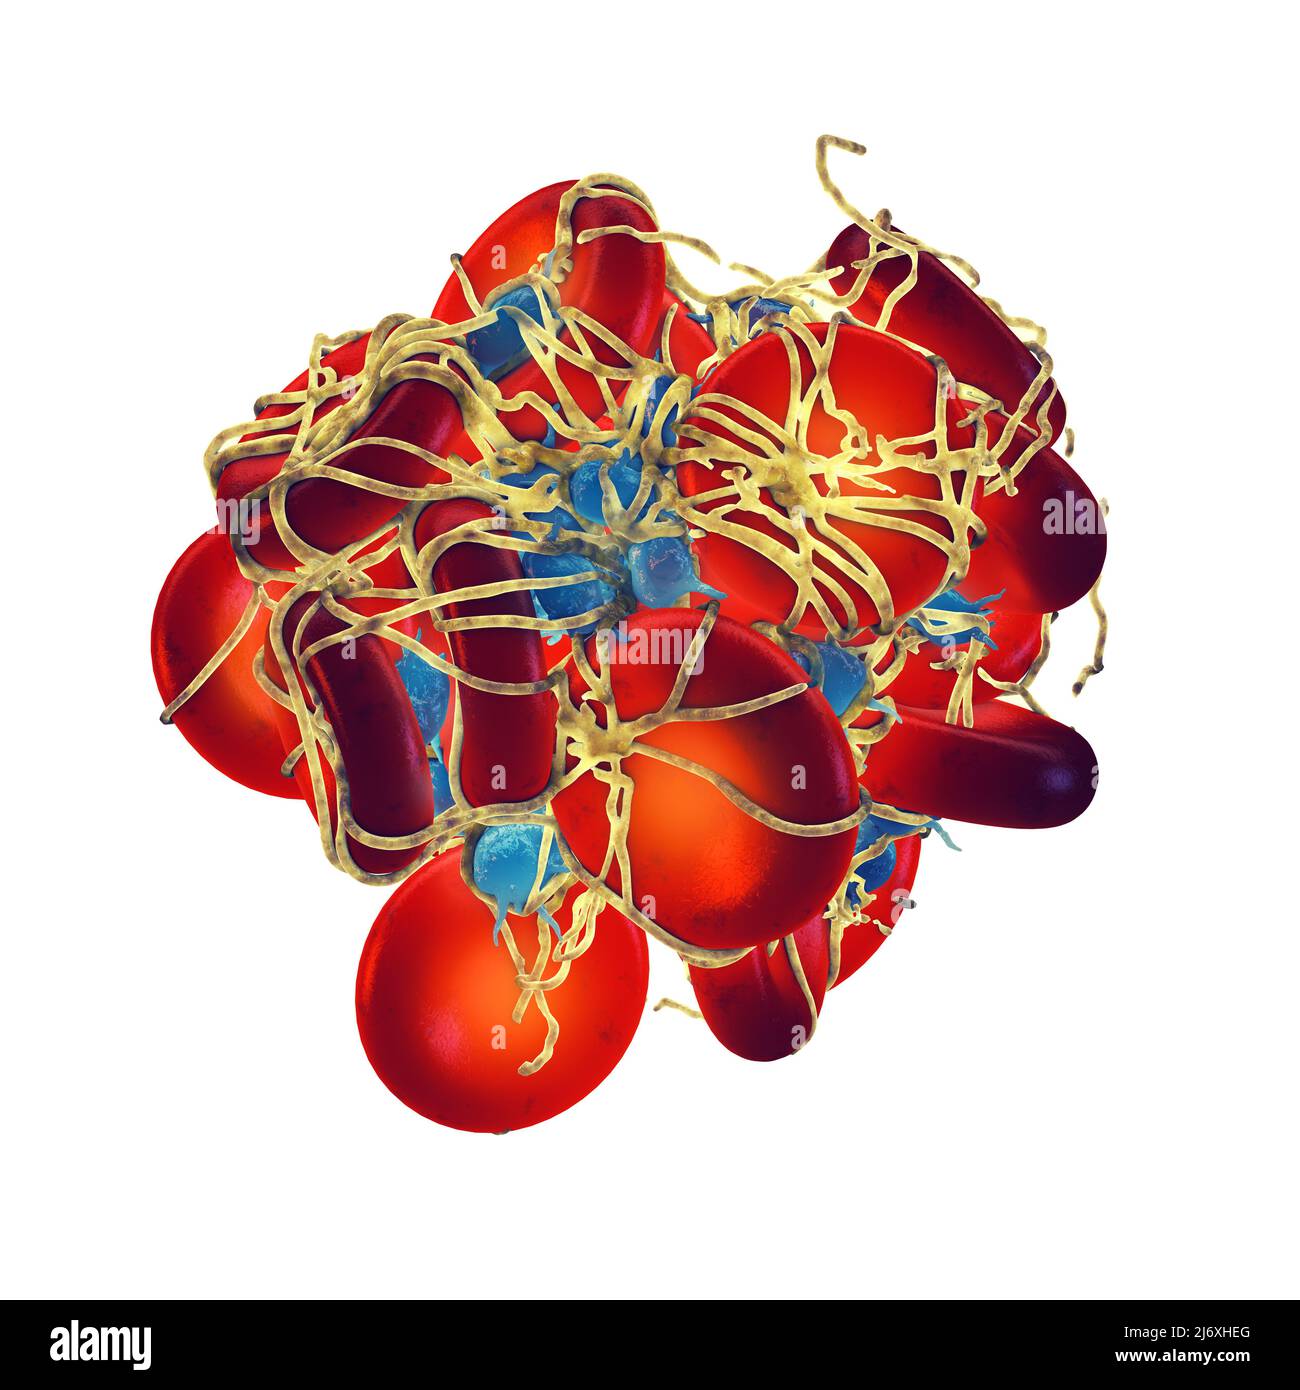 Piastrine attivate (trombociti) che formano un coagulo di sangue (trombo) coperto da mesh di fibrina. Coagulo di sangue isolato su bianco Foto Stock